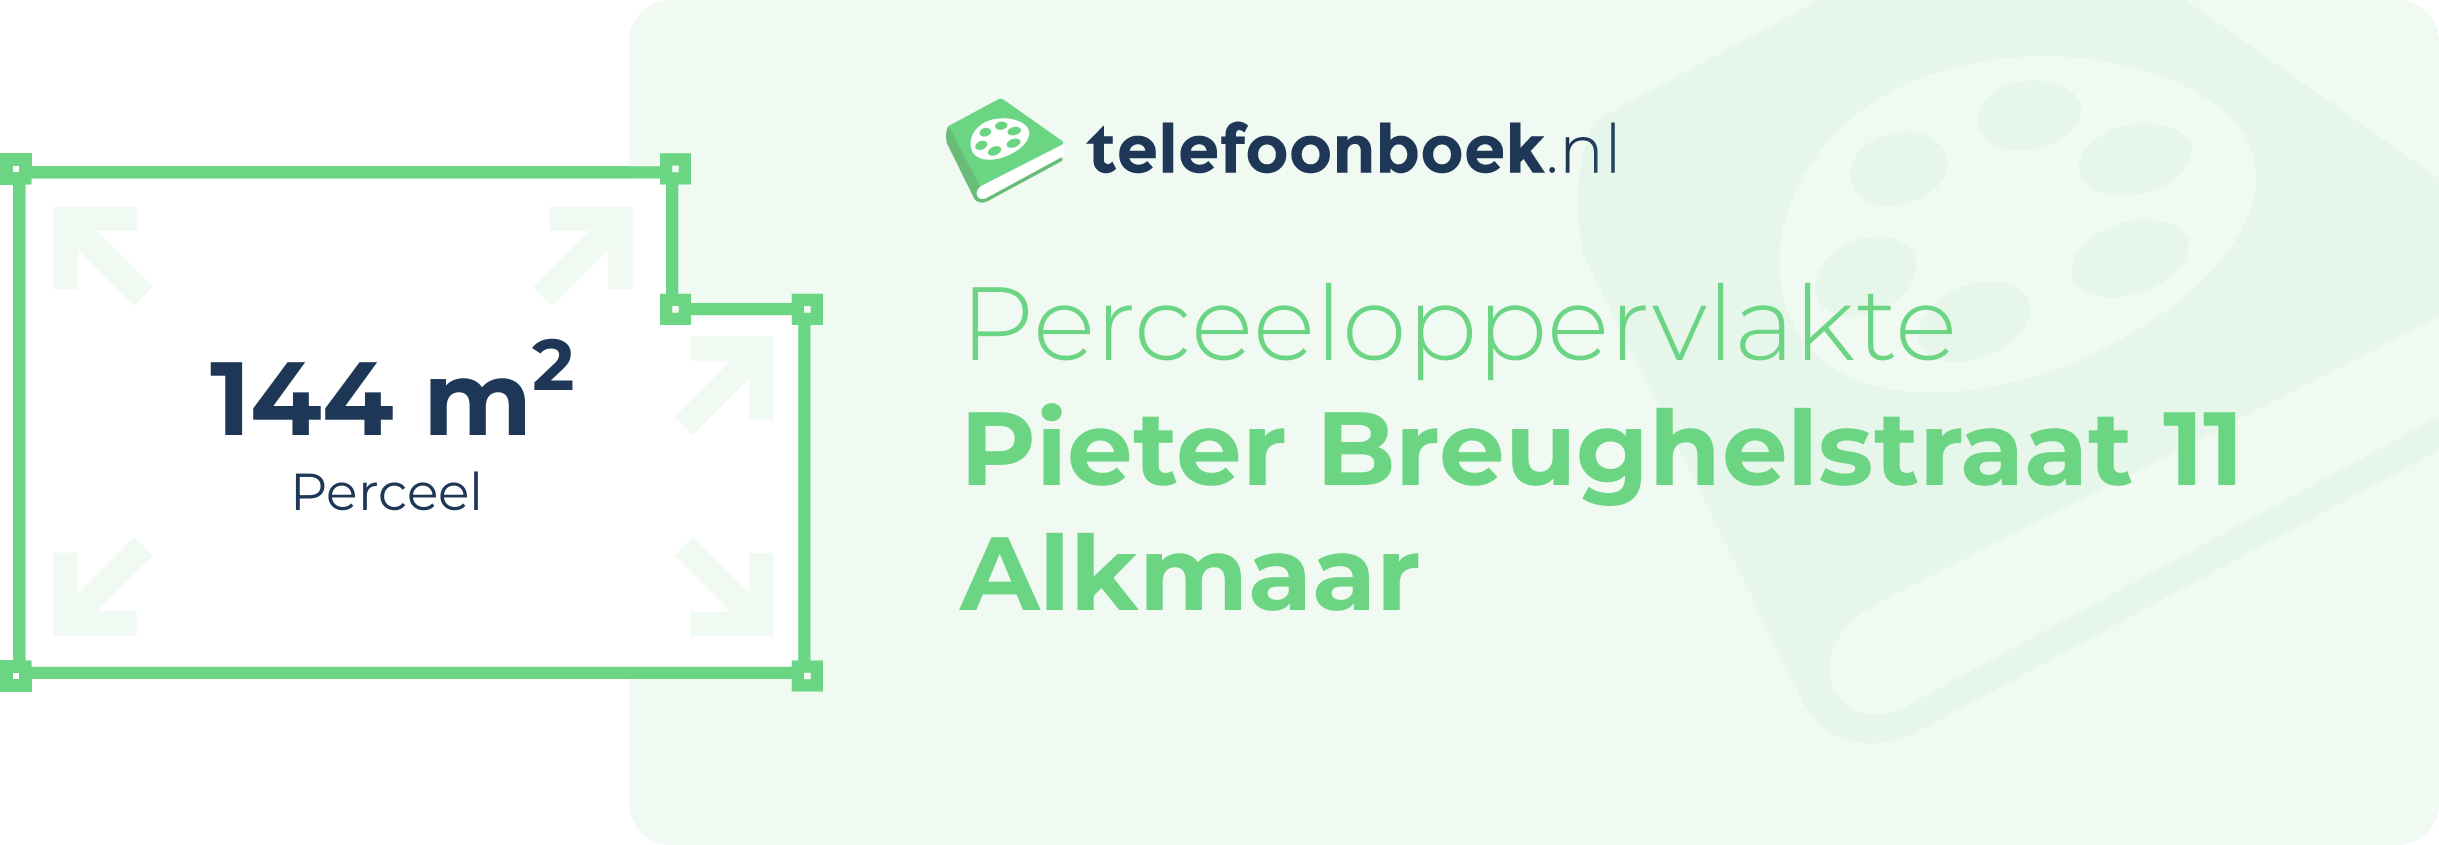 Perceeloppervlakte Pieter Breughelstraat 11 Alkmaar